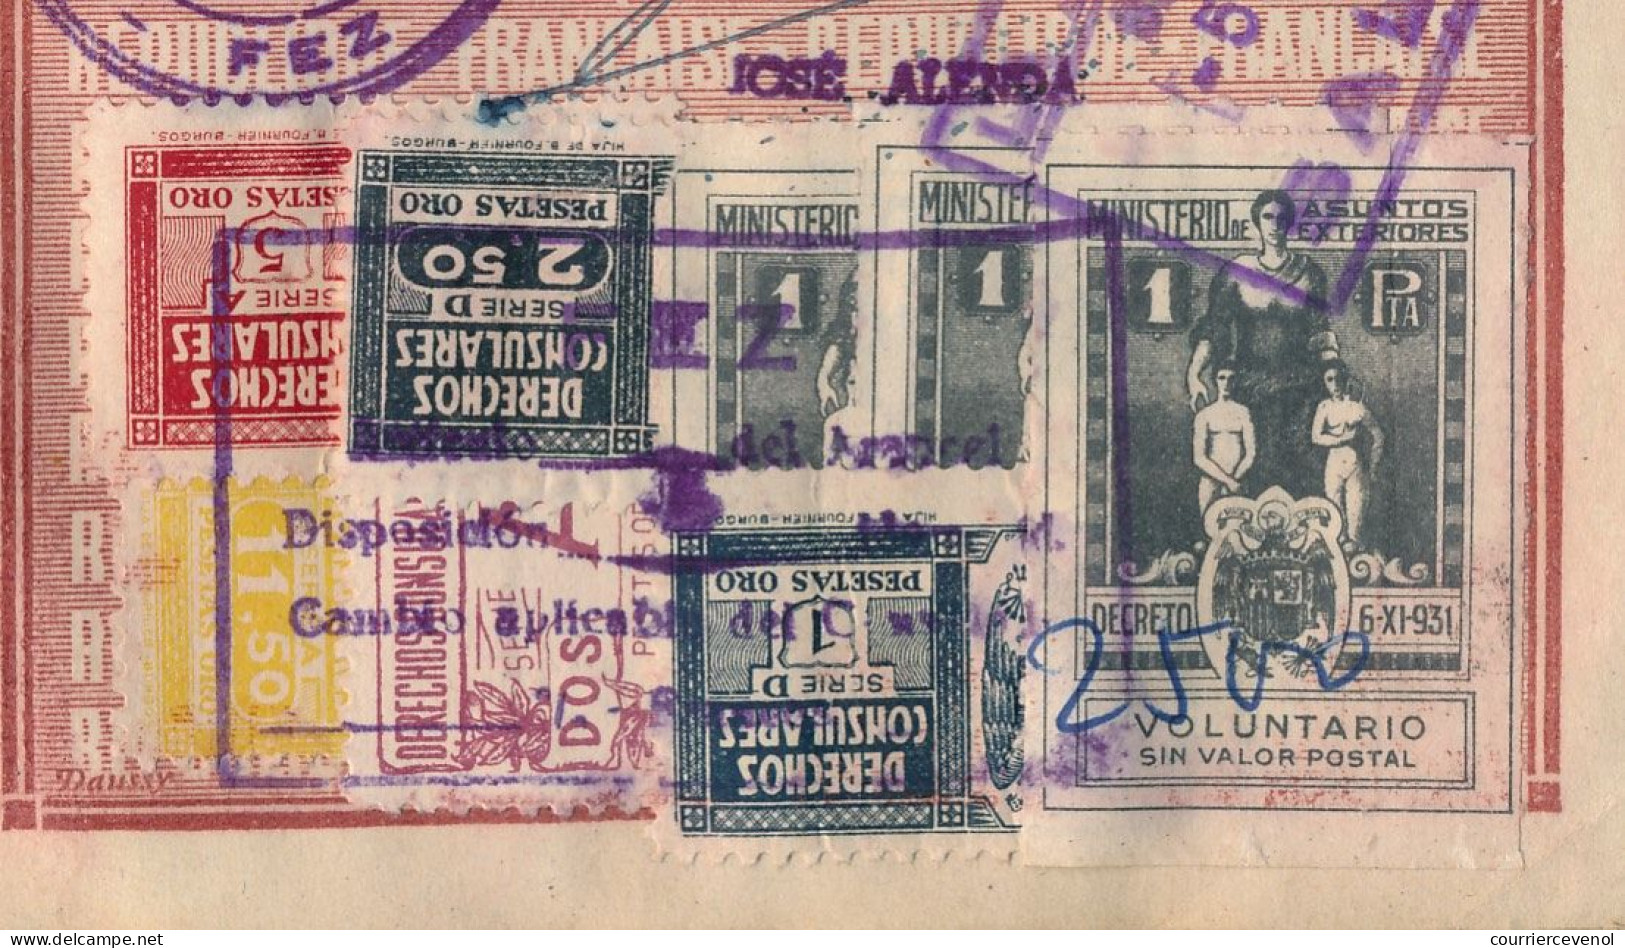 FRANCE / MAROC - Passeport 500 francs 1948/1957 - Vannes, renouvelé à Khénifra - Nombreux visas et fiscaux espagnols